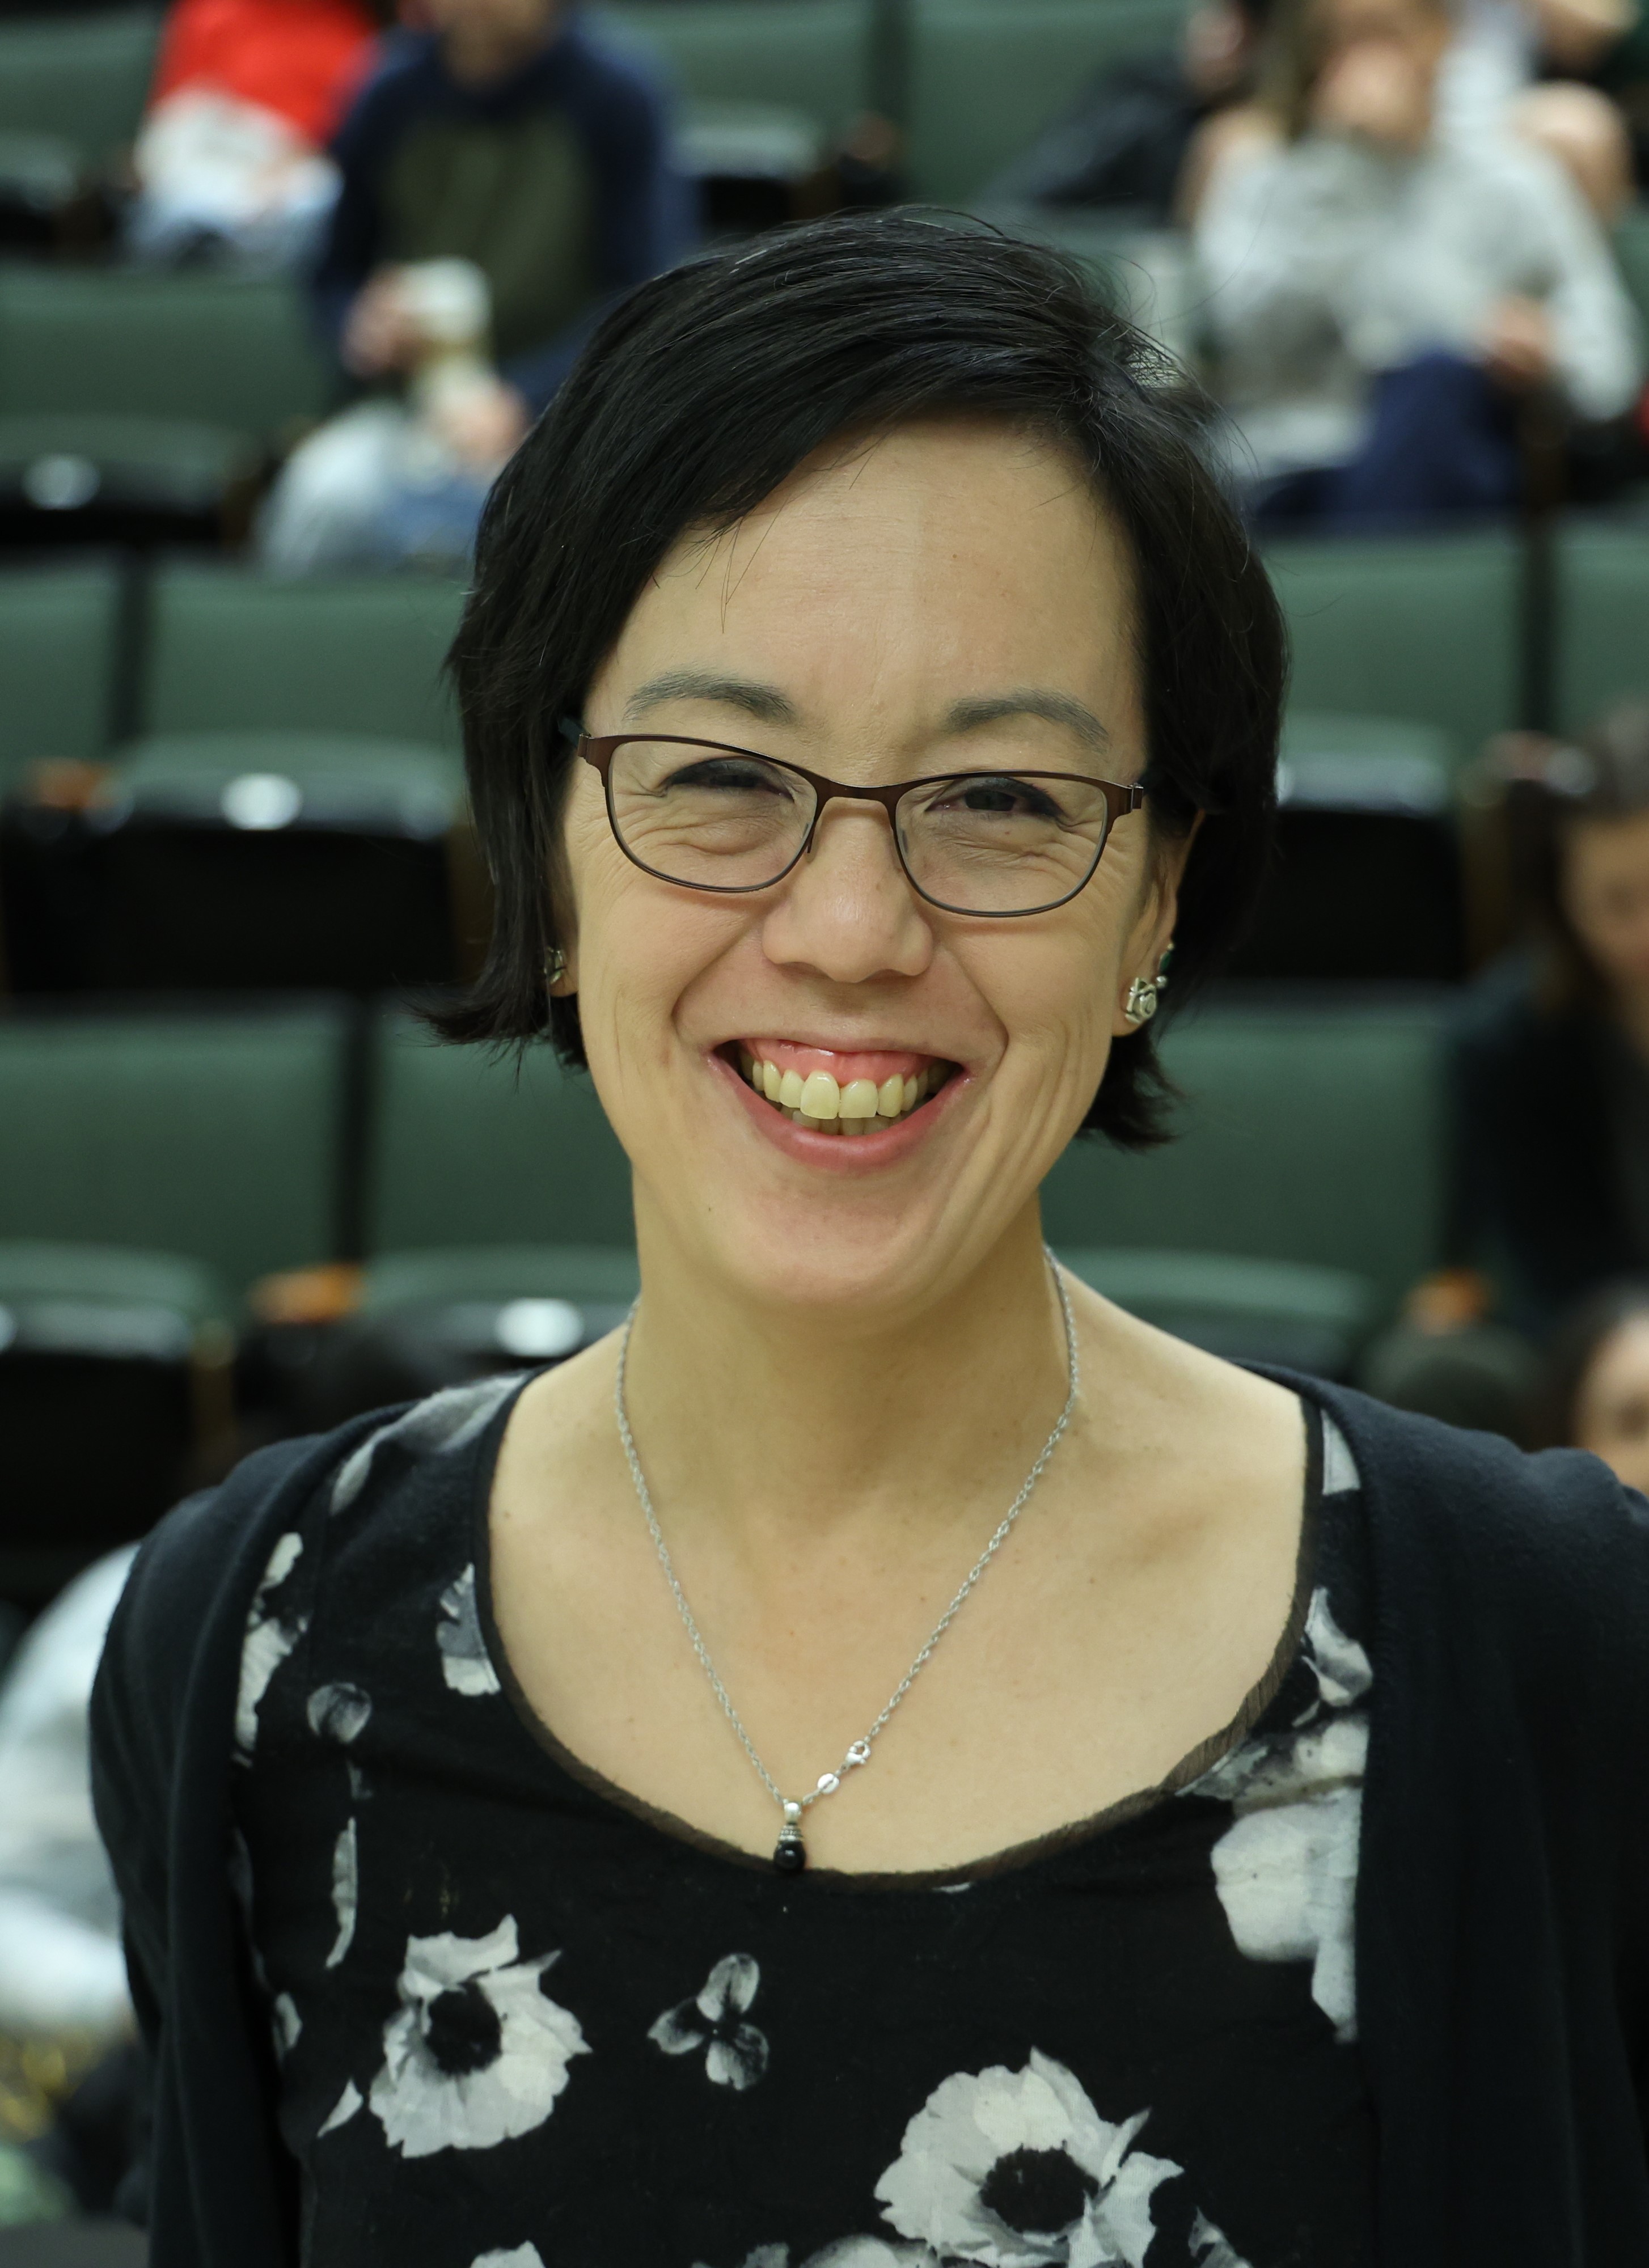 Dr. Jo-Ann Tsang